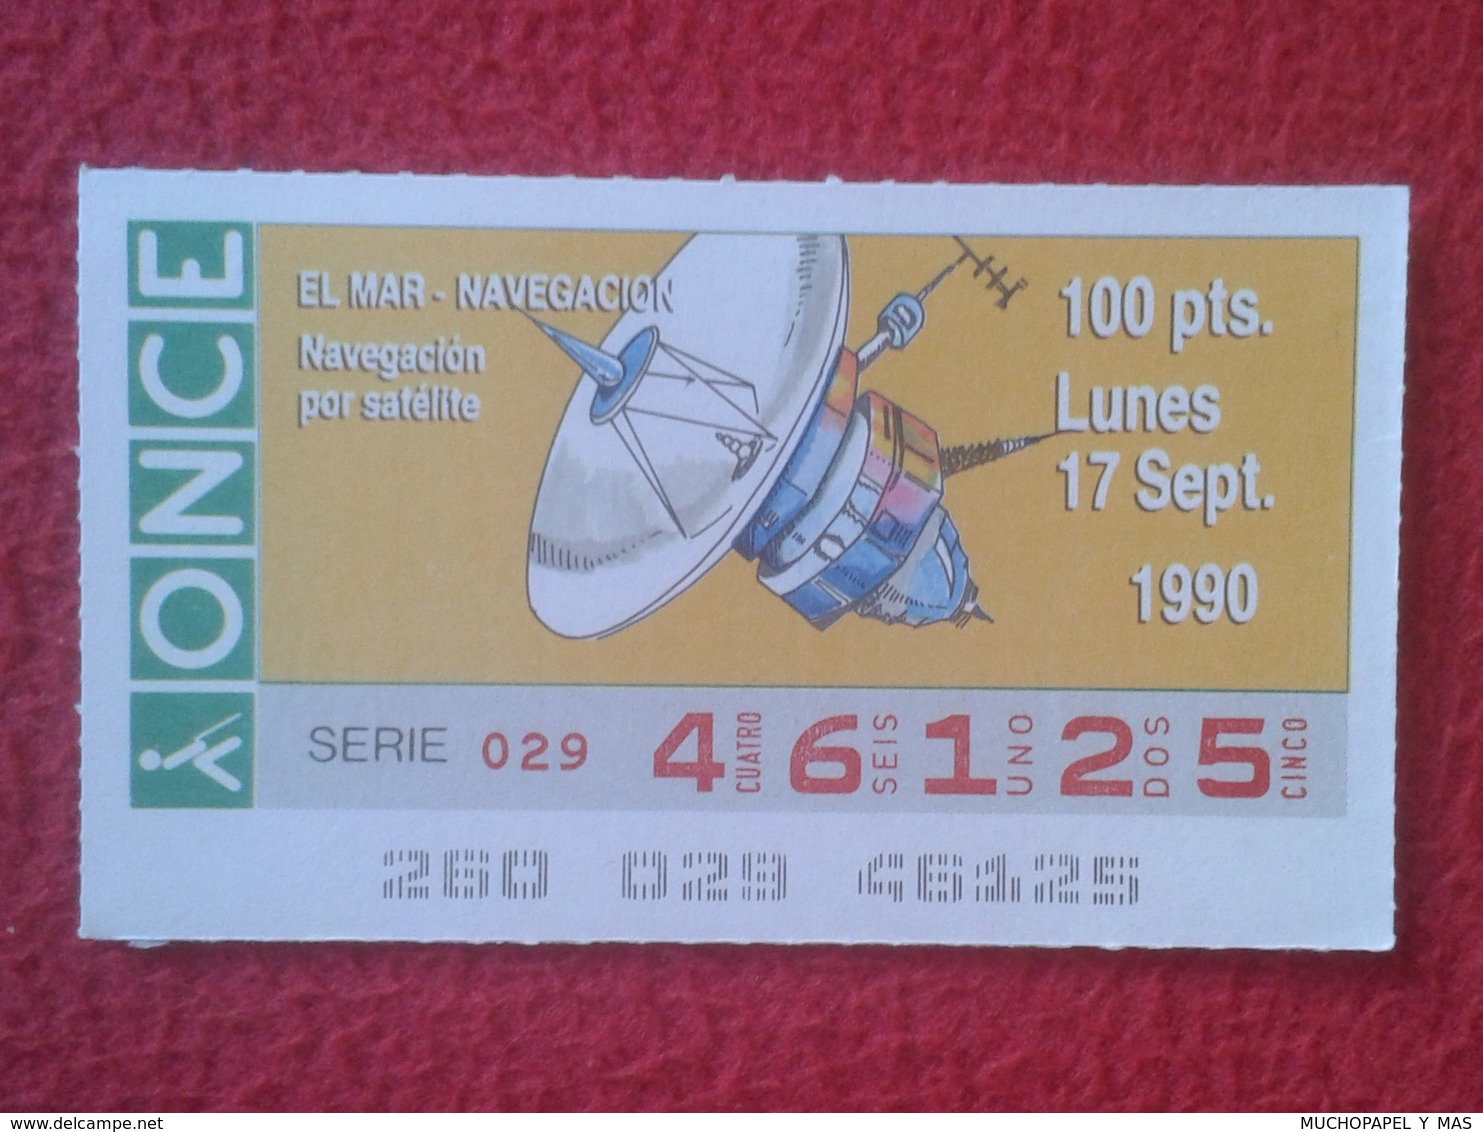 CUPÓN DE ONCE LOTTERY CIEGOS SPAIN LOTERÍA BLIND 1990 EL MAR THE SEA LA MER NAVEGACIÓN POR SATÉLITE SATELLITE NAVIGATION - Billetes De Lotería